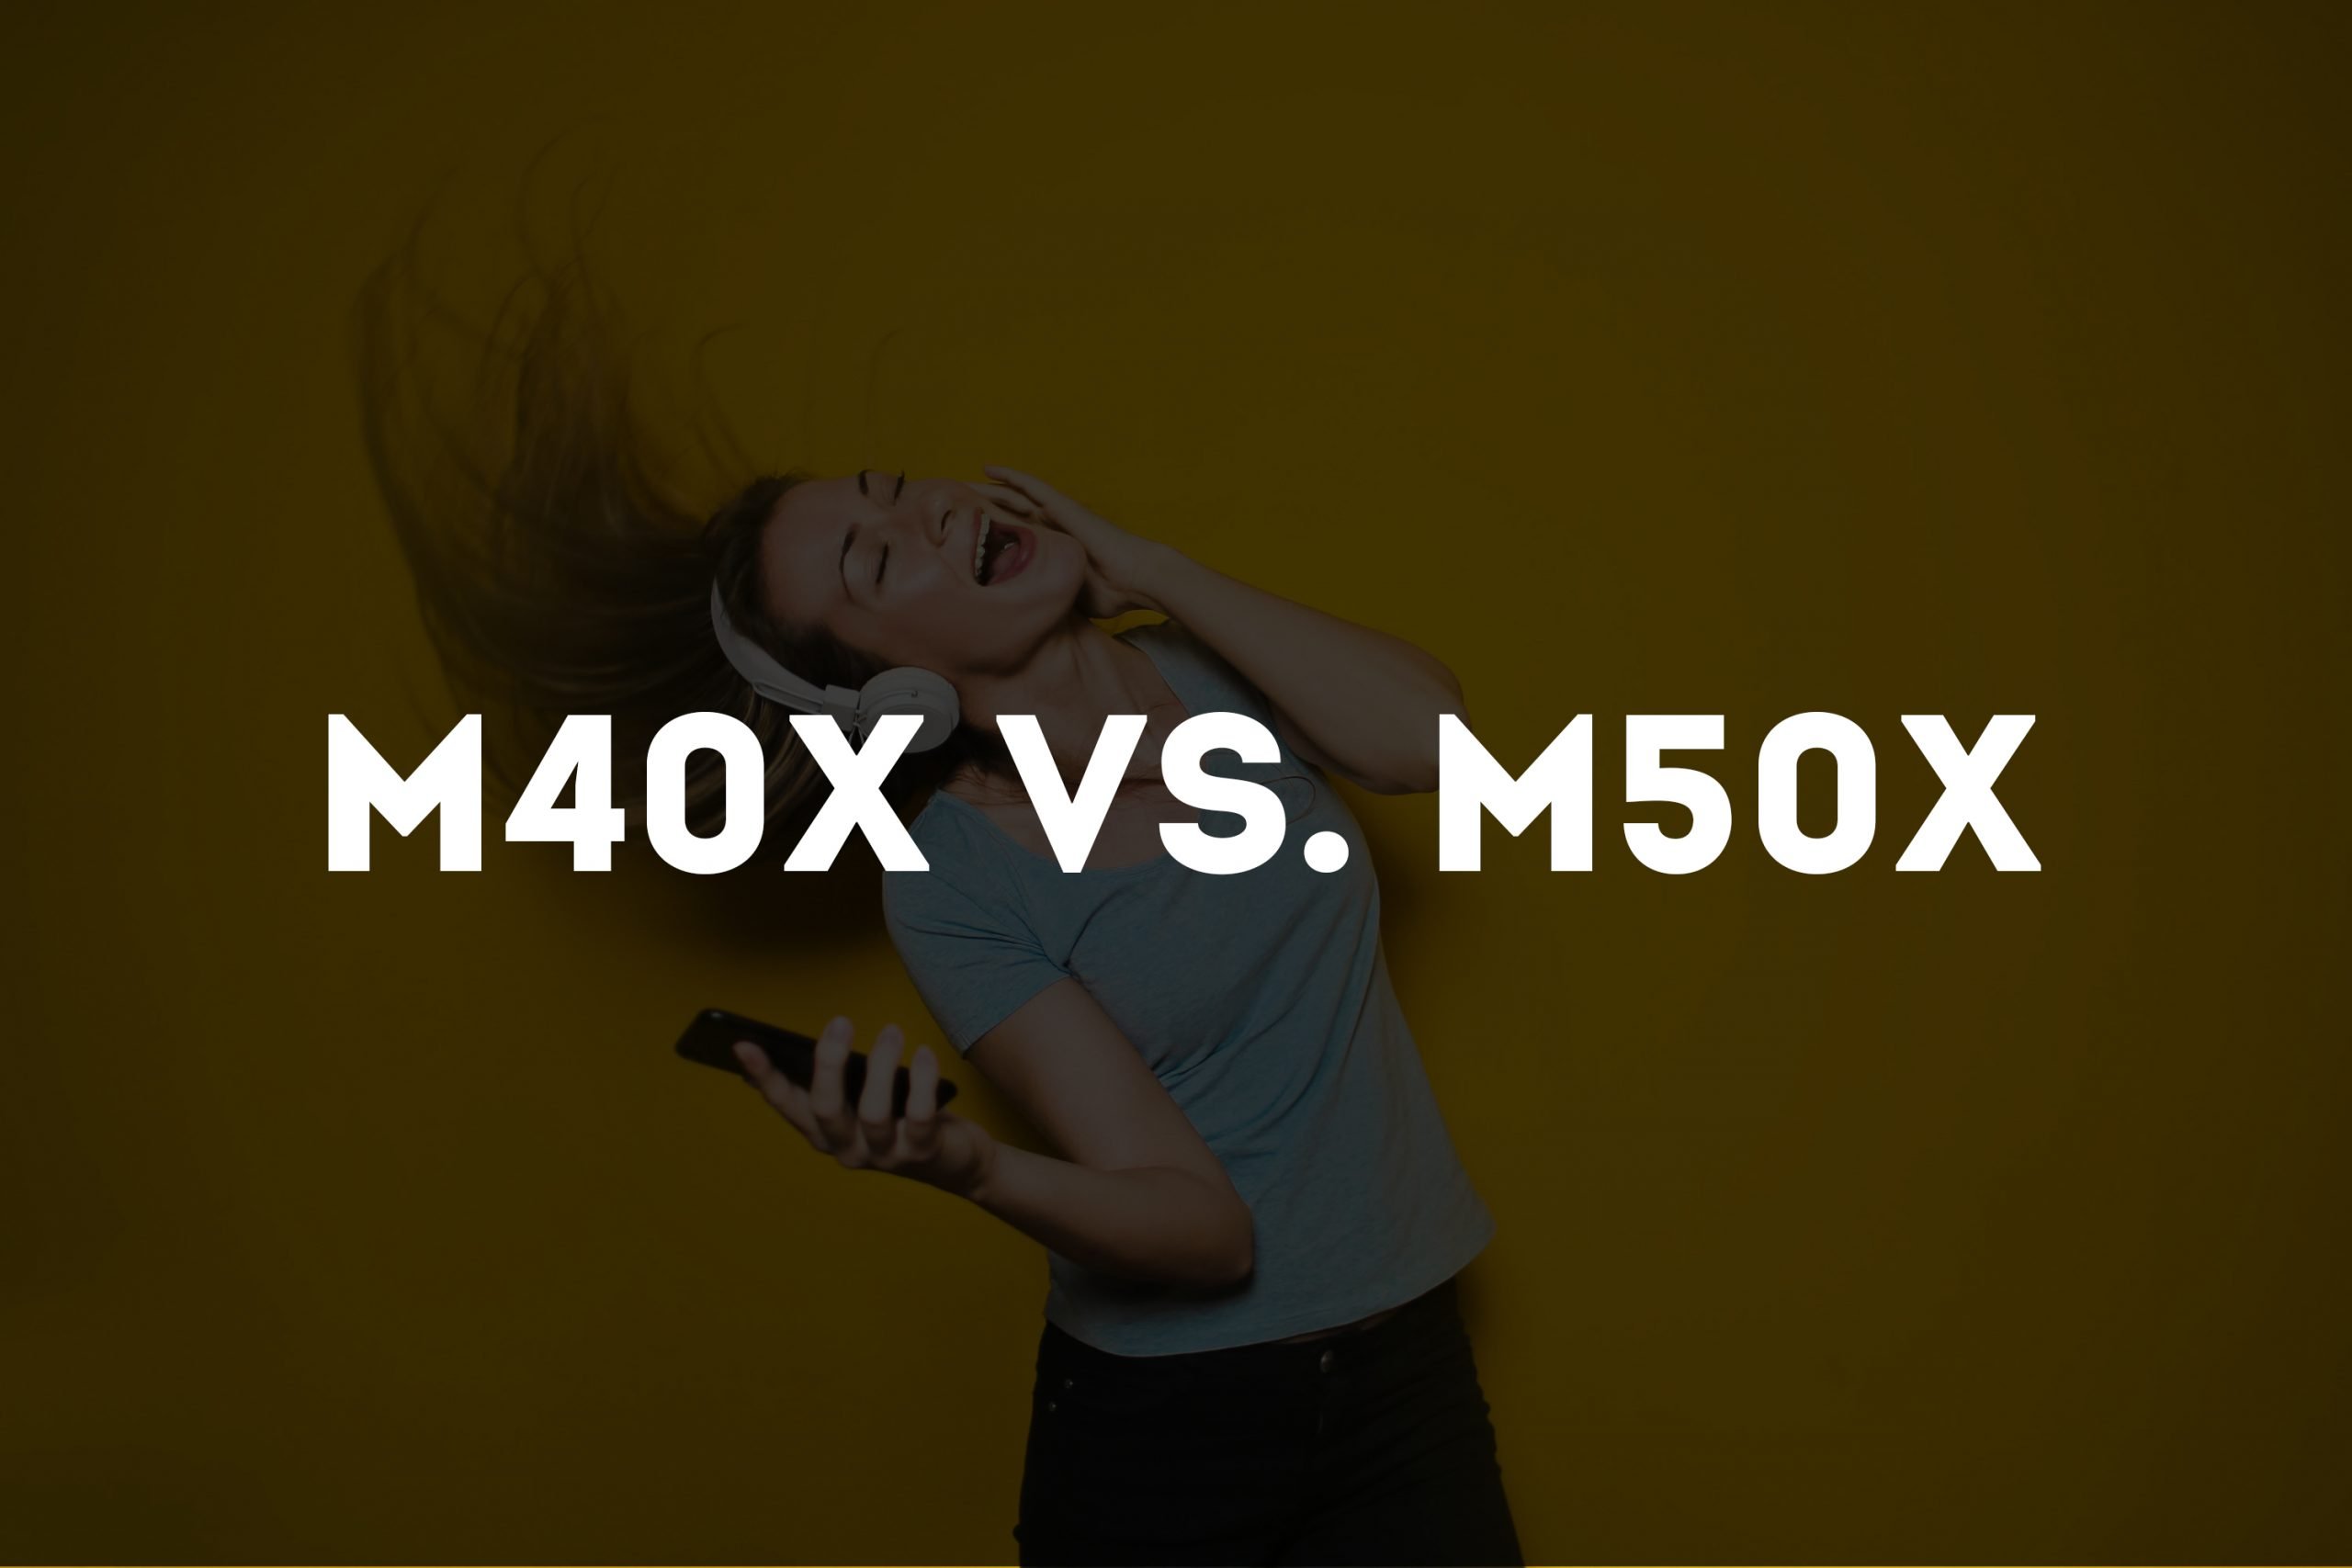 m40x vs m50x